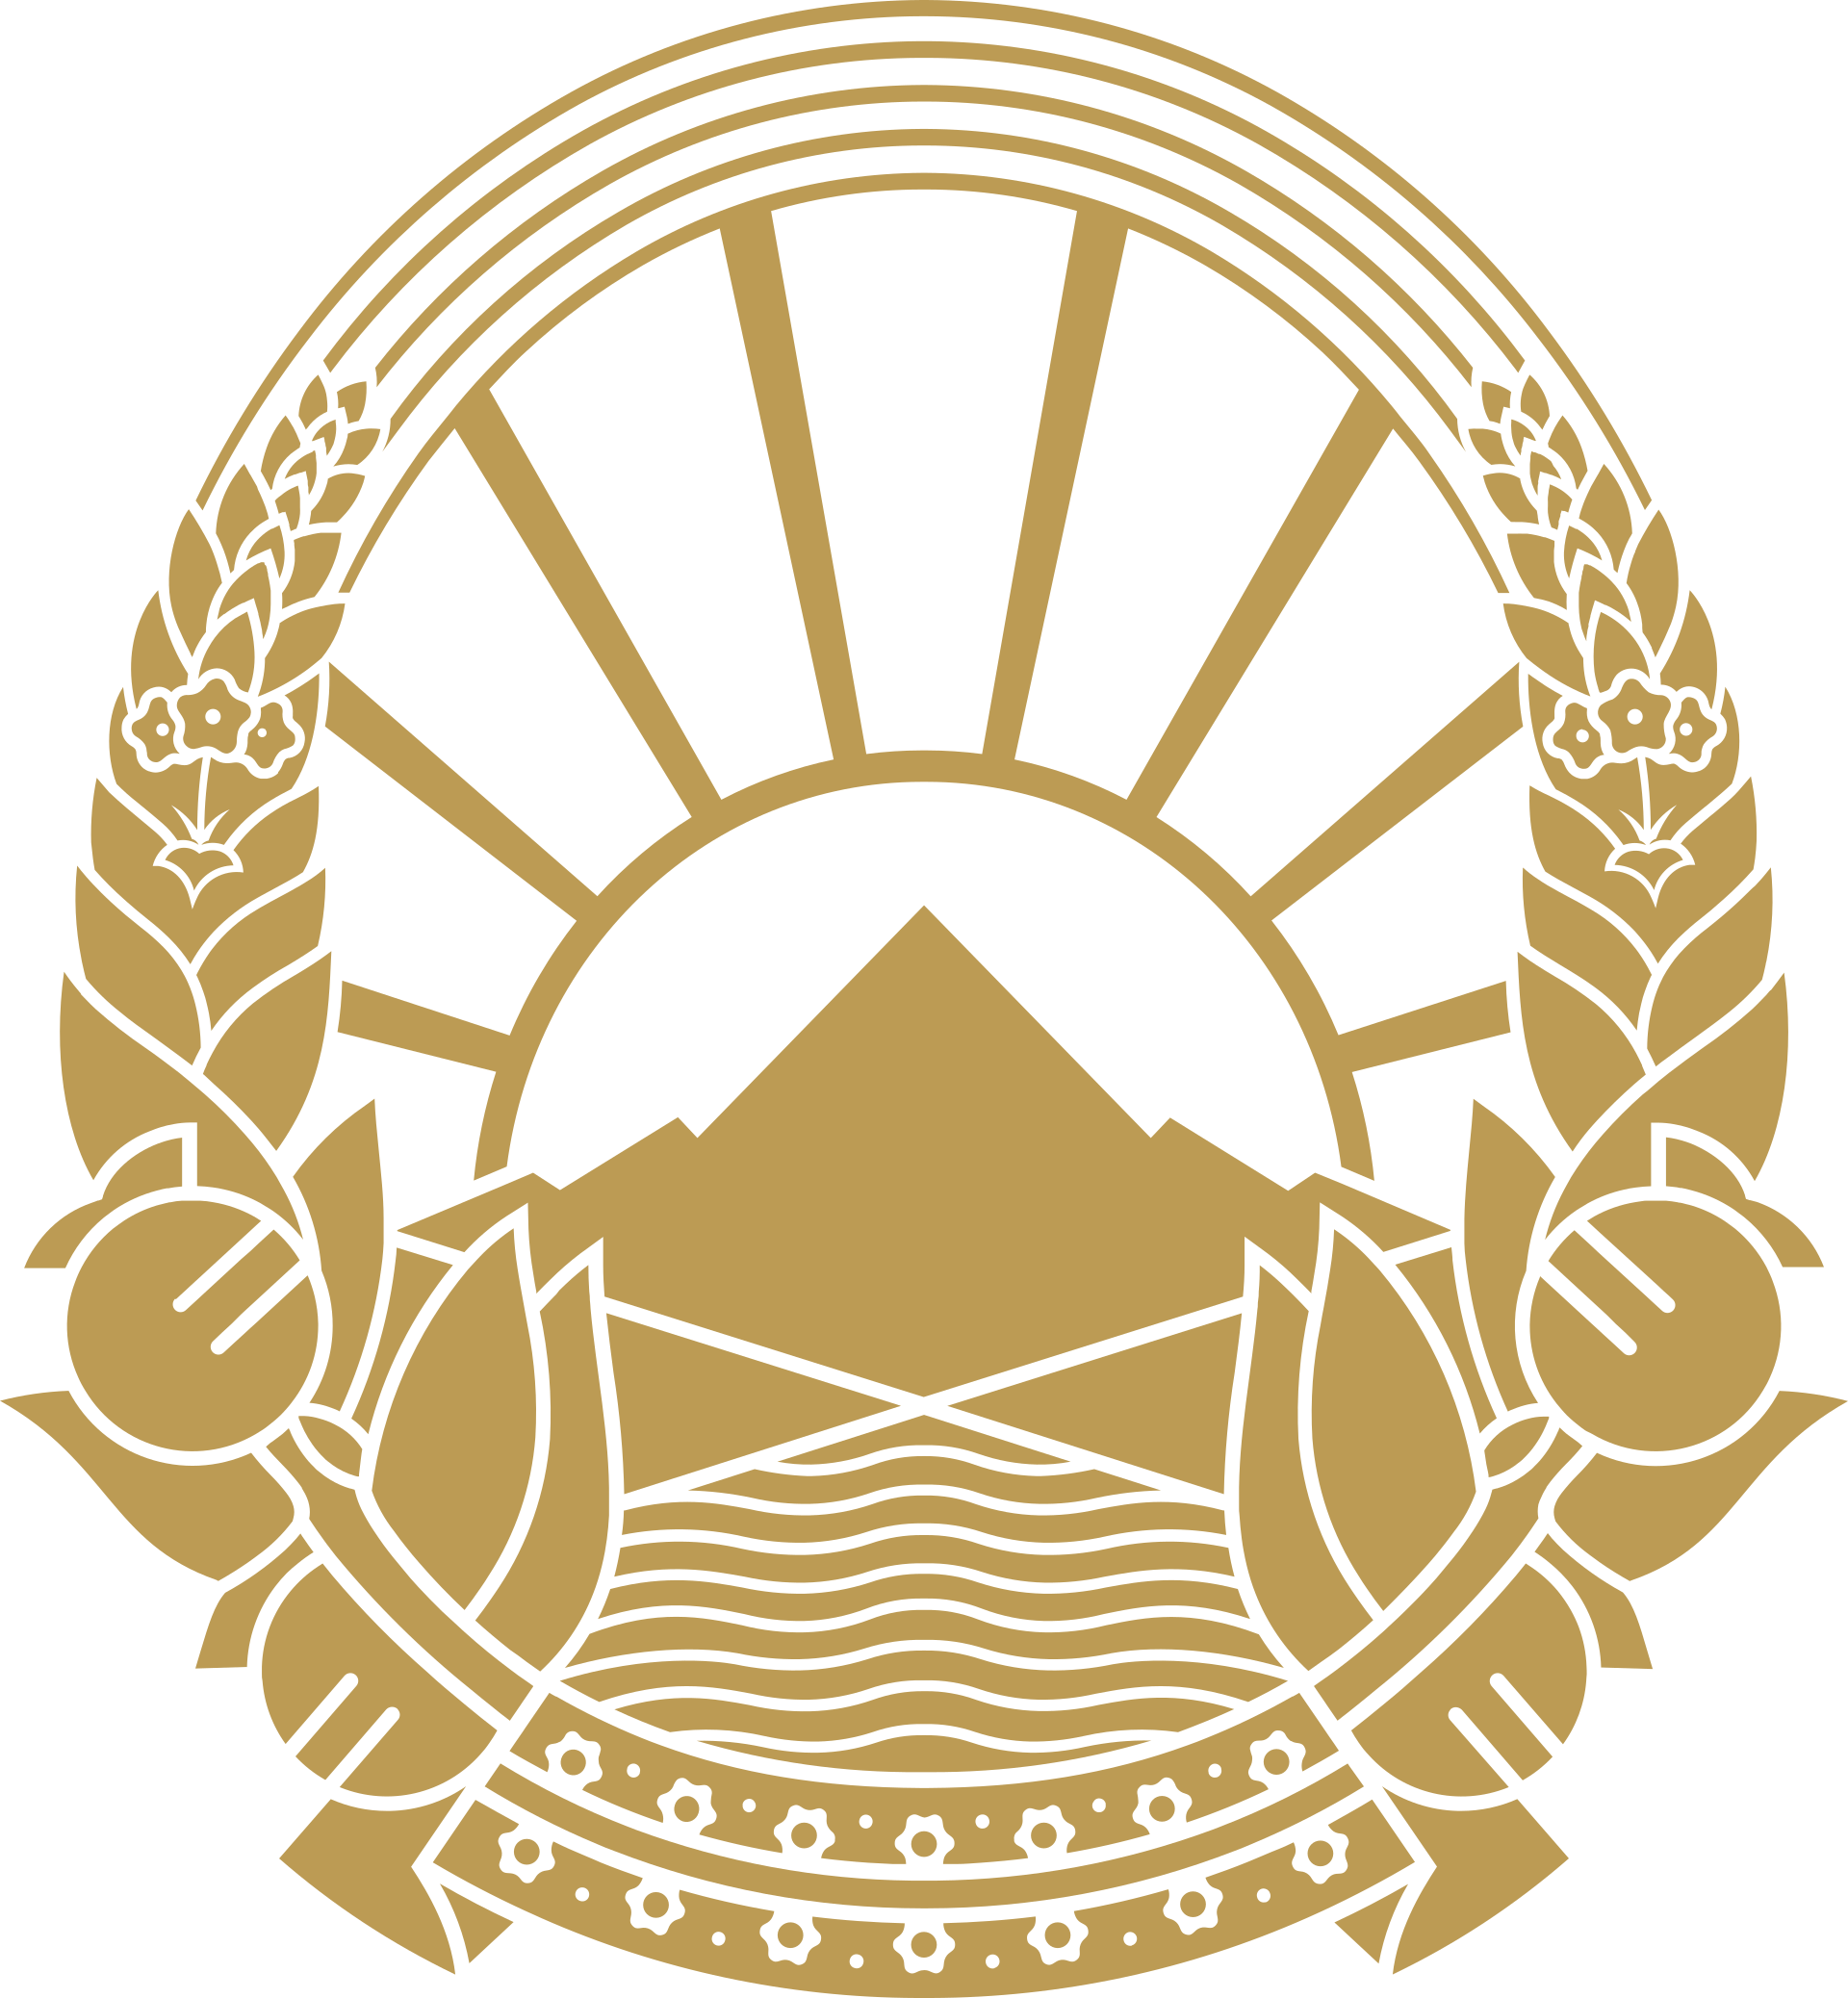 National Emblem of North Macedonia